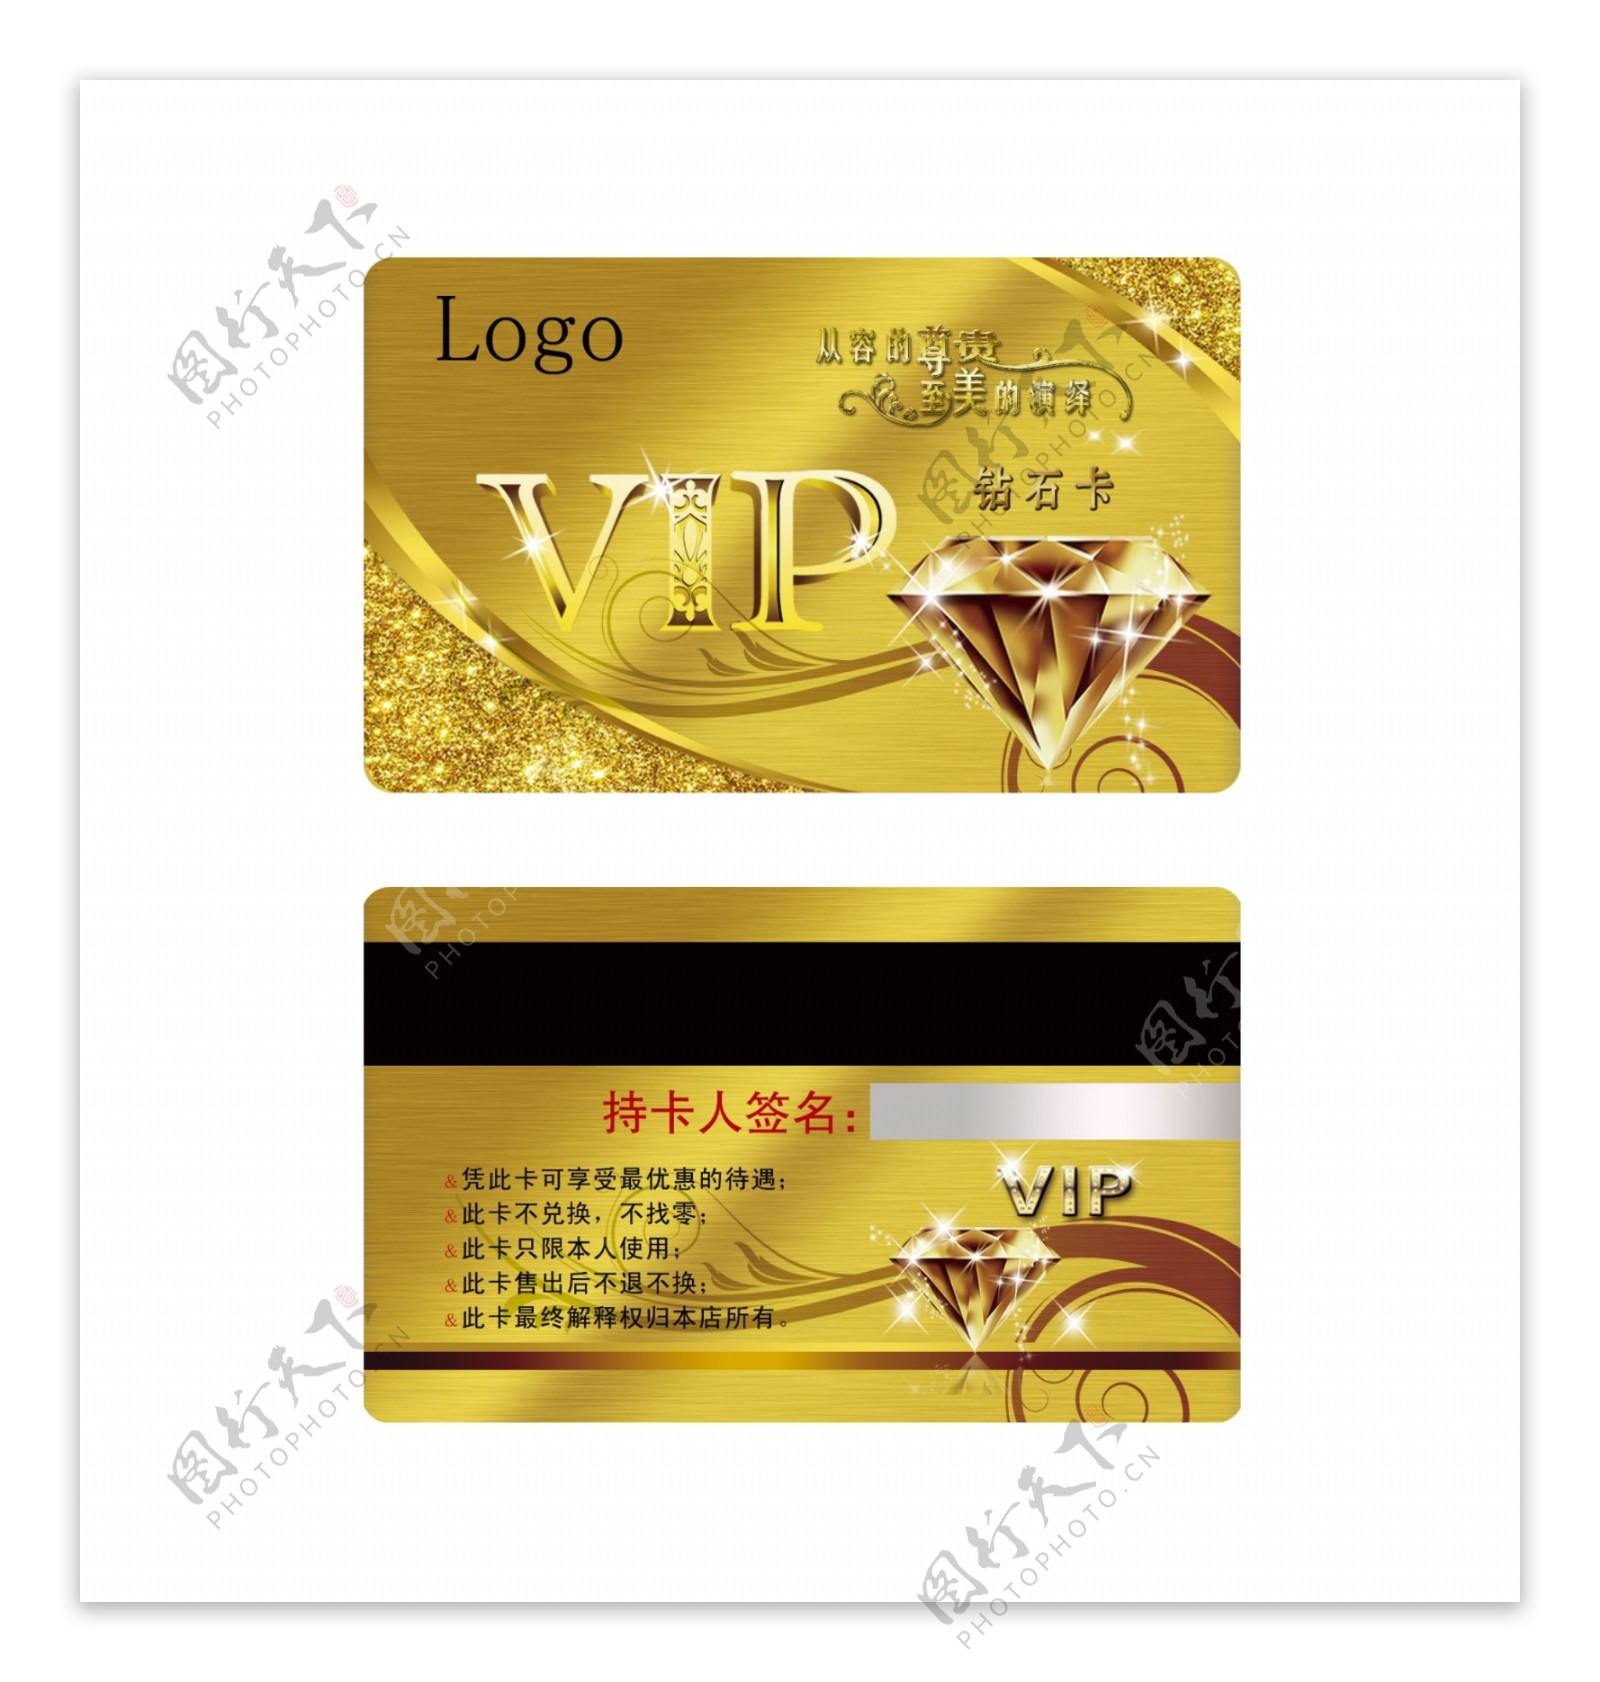 金色会员卡贵宾卡钻石卡VIP图片